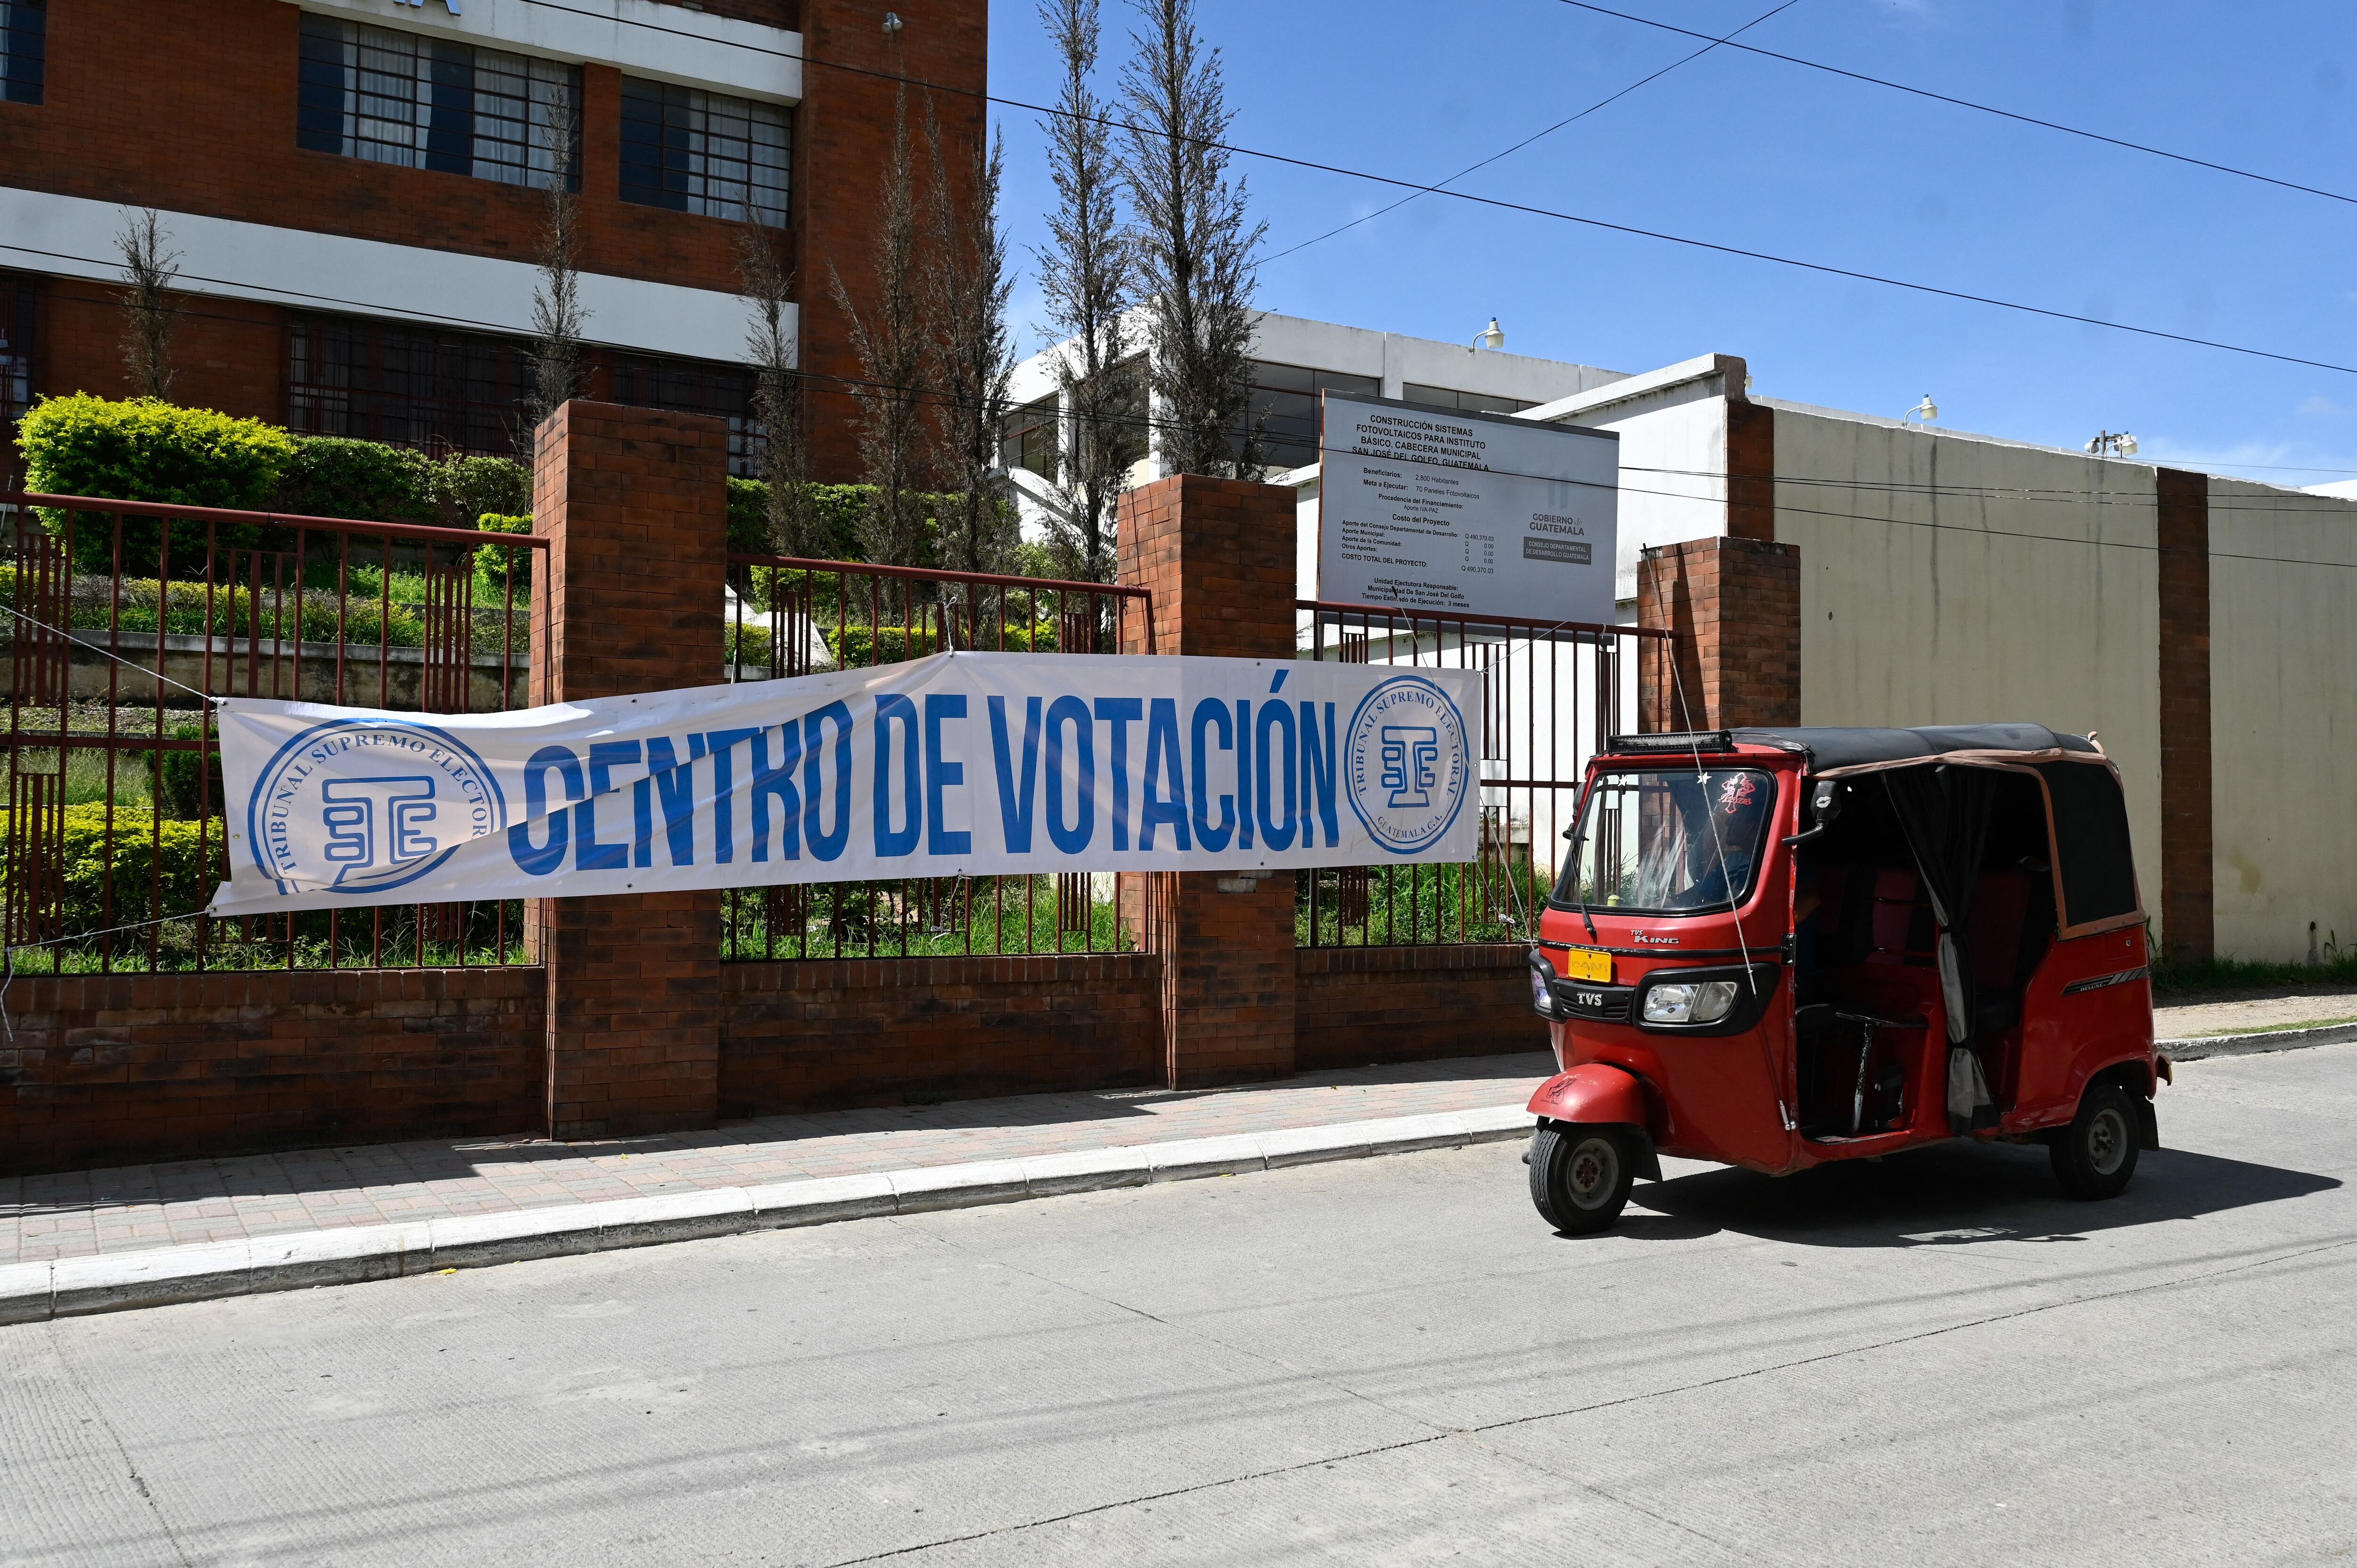 Descontento y rechazo: El desafío para los candidatos presidenciales en Guatemala